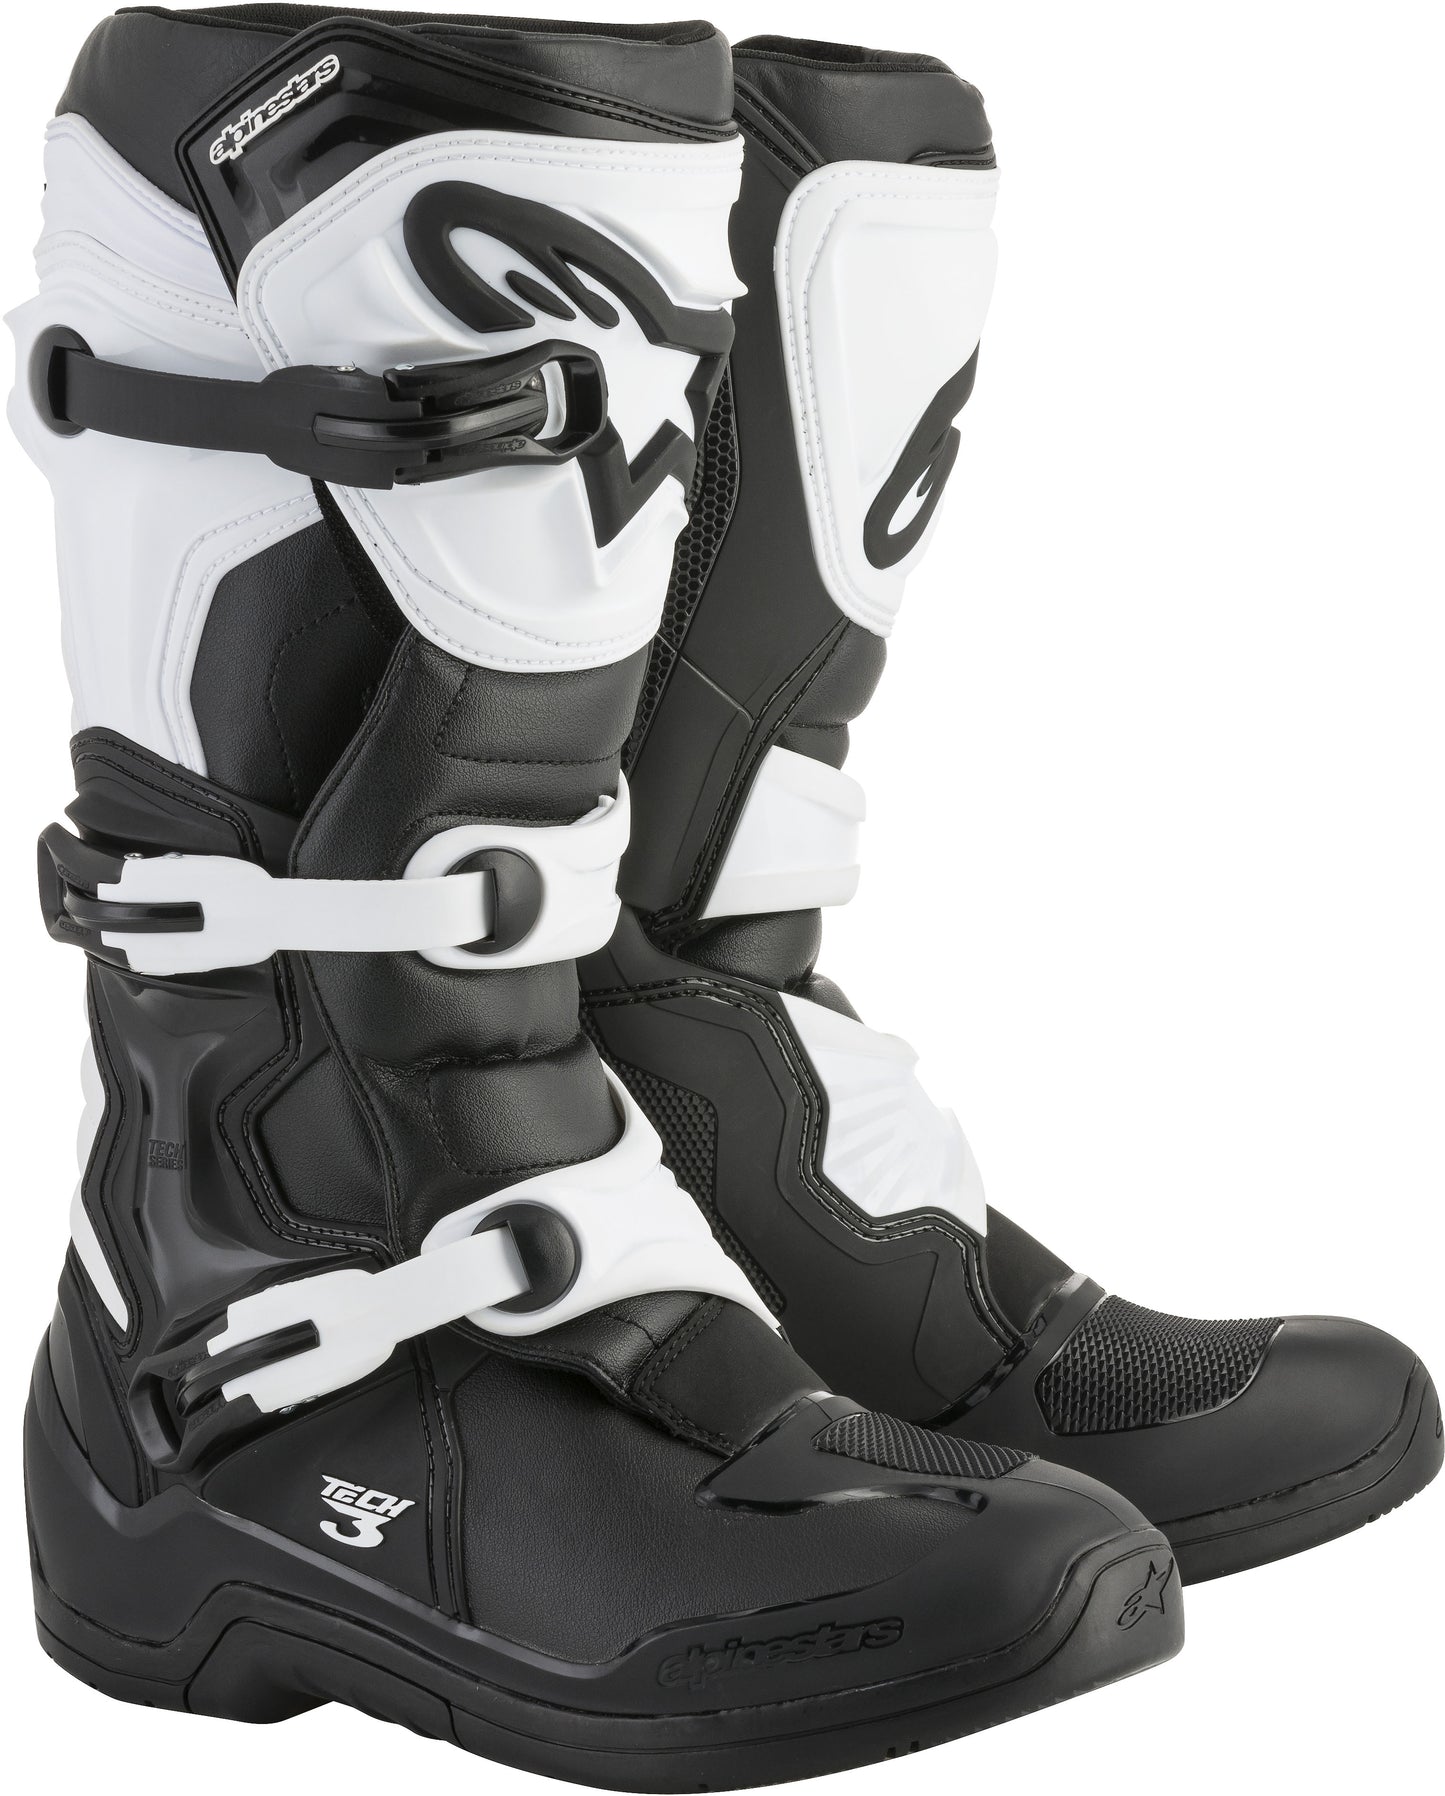 Tech 3 Boots Black/White Sz 11